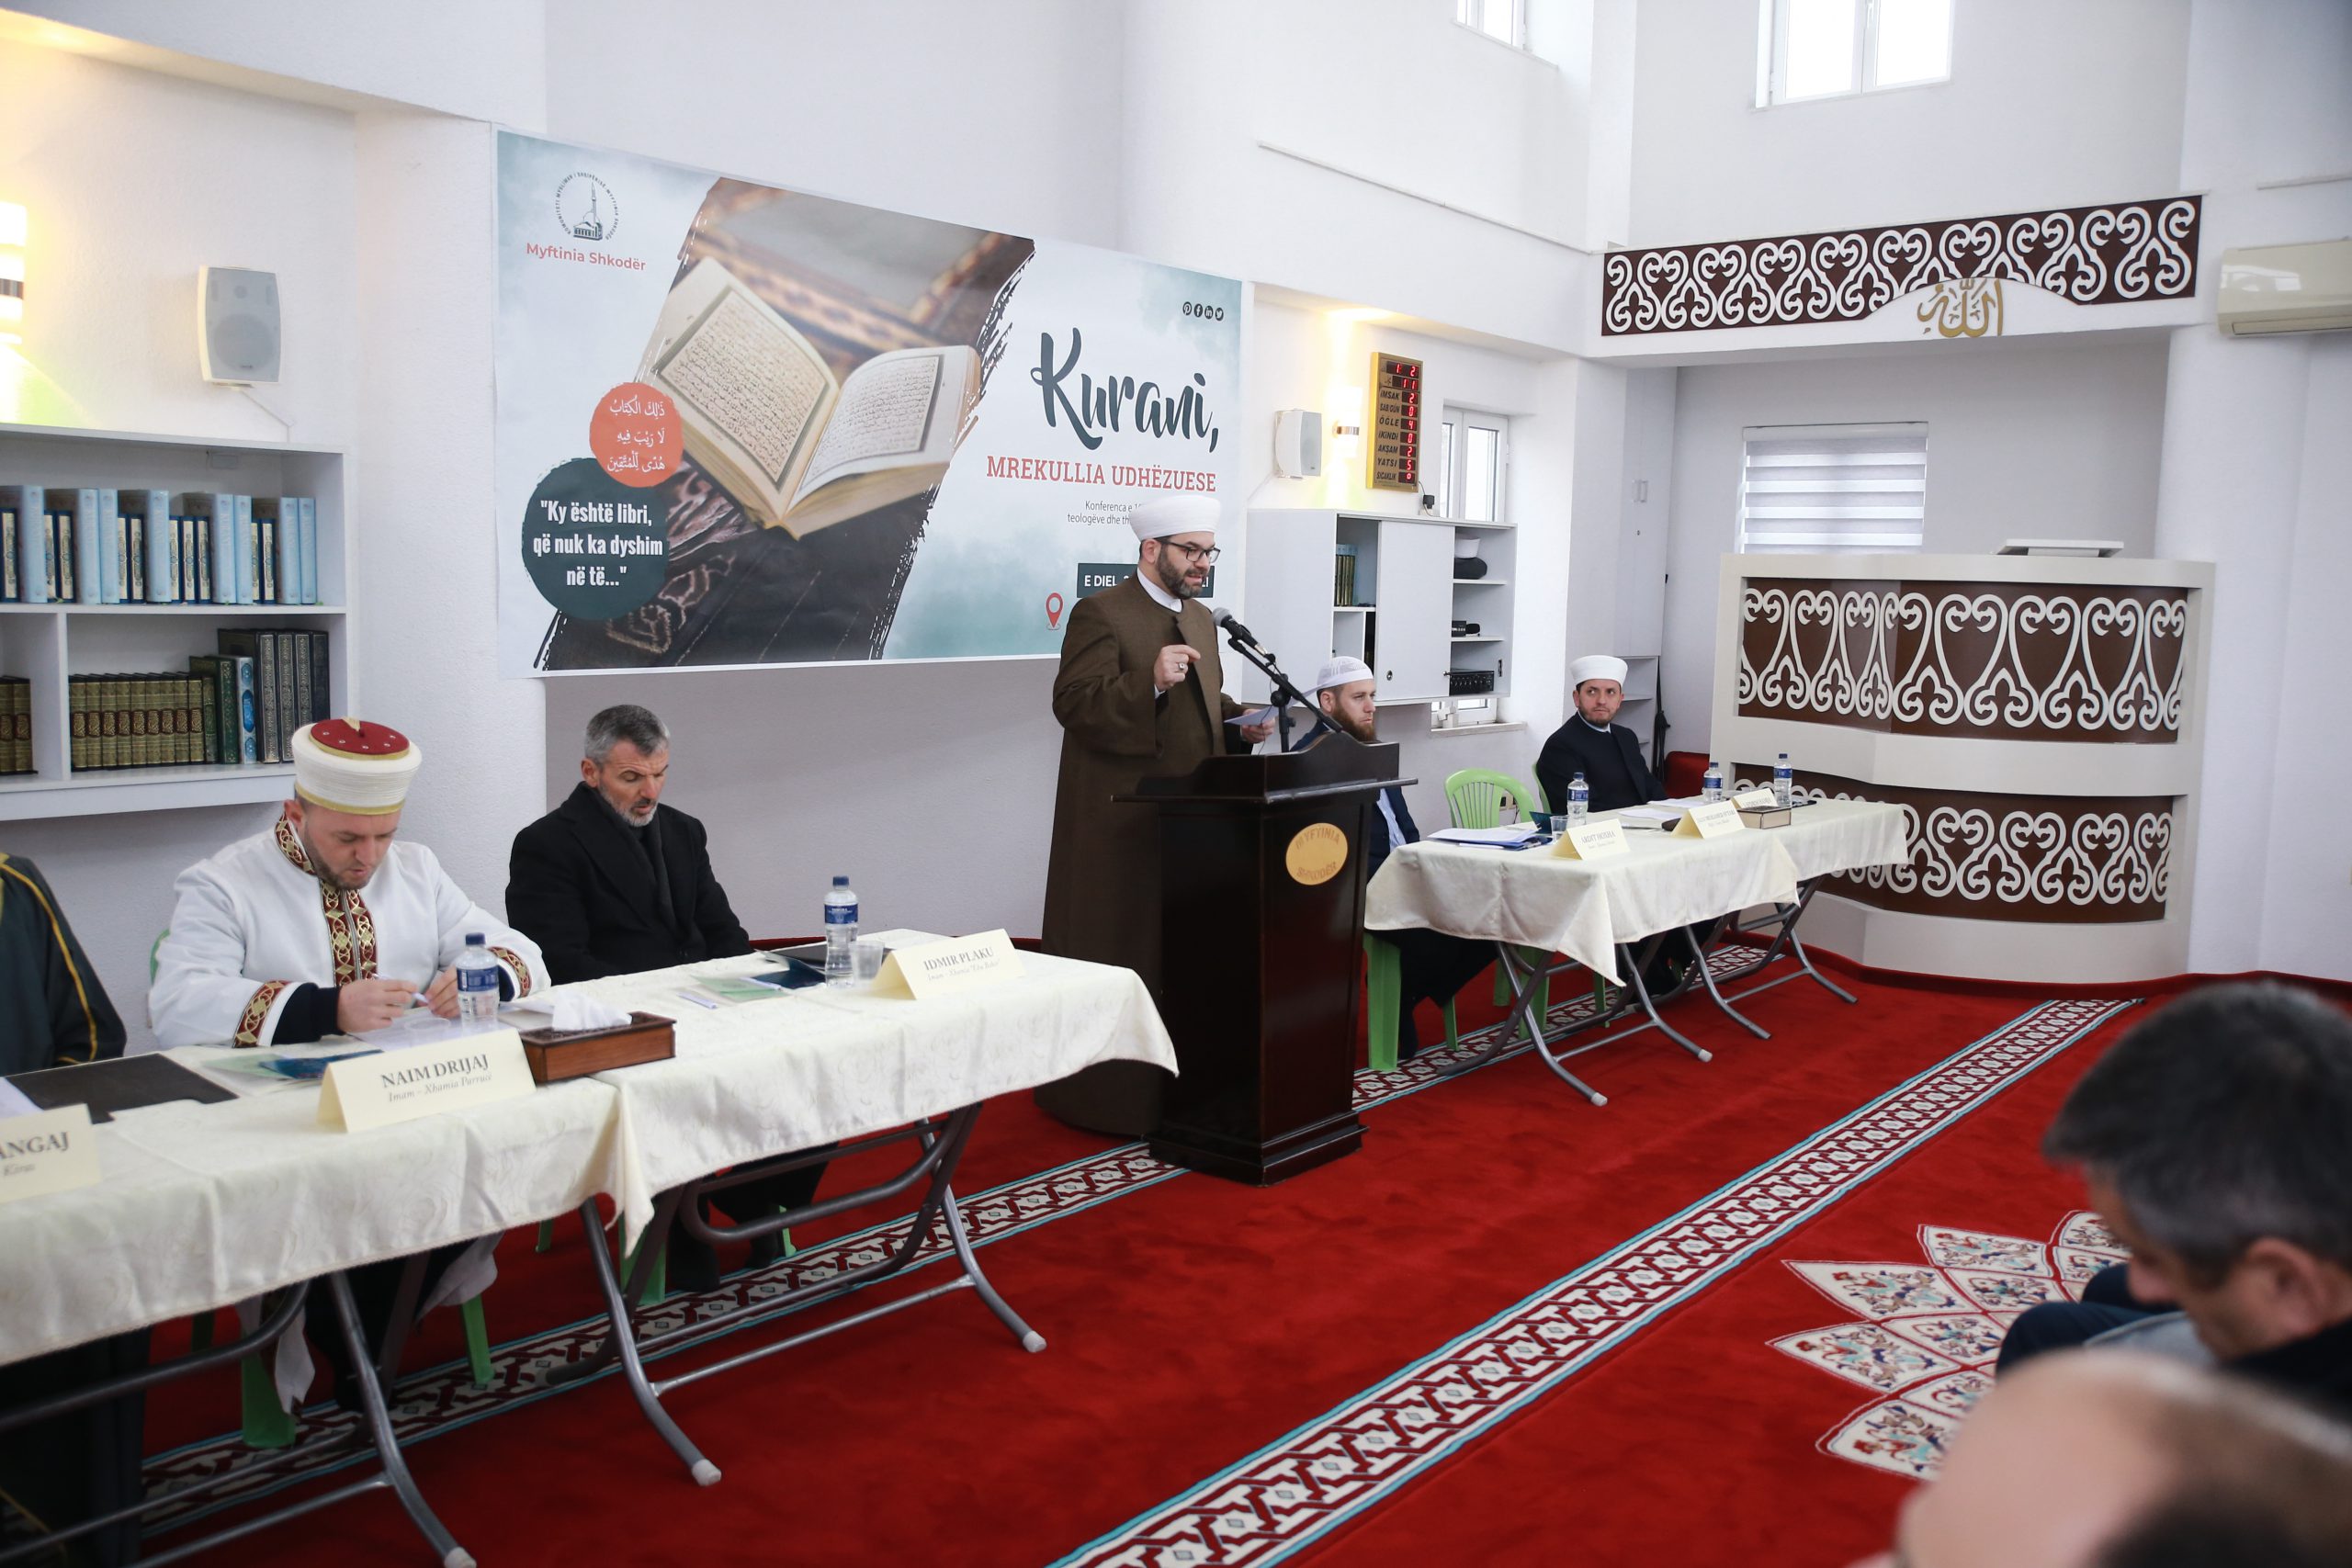 Zhvillohet konferenca e 10-të vjetore e imamëve me temë: “KURANI, MREKULLIA UDHËZUESE”